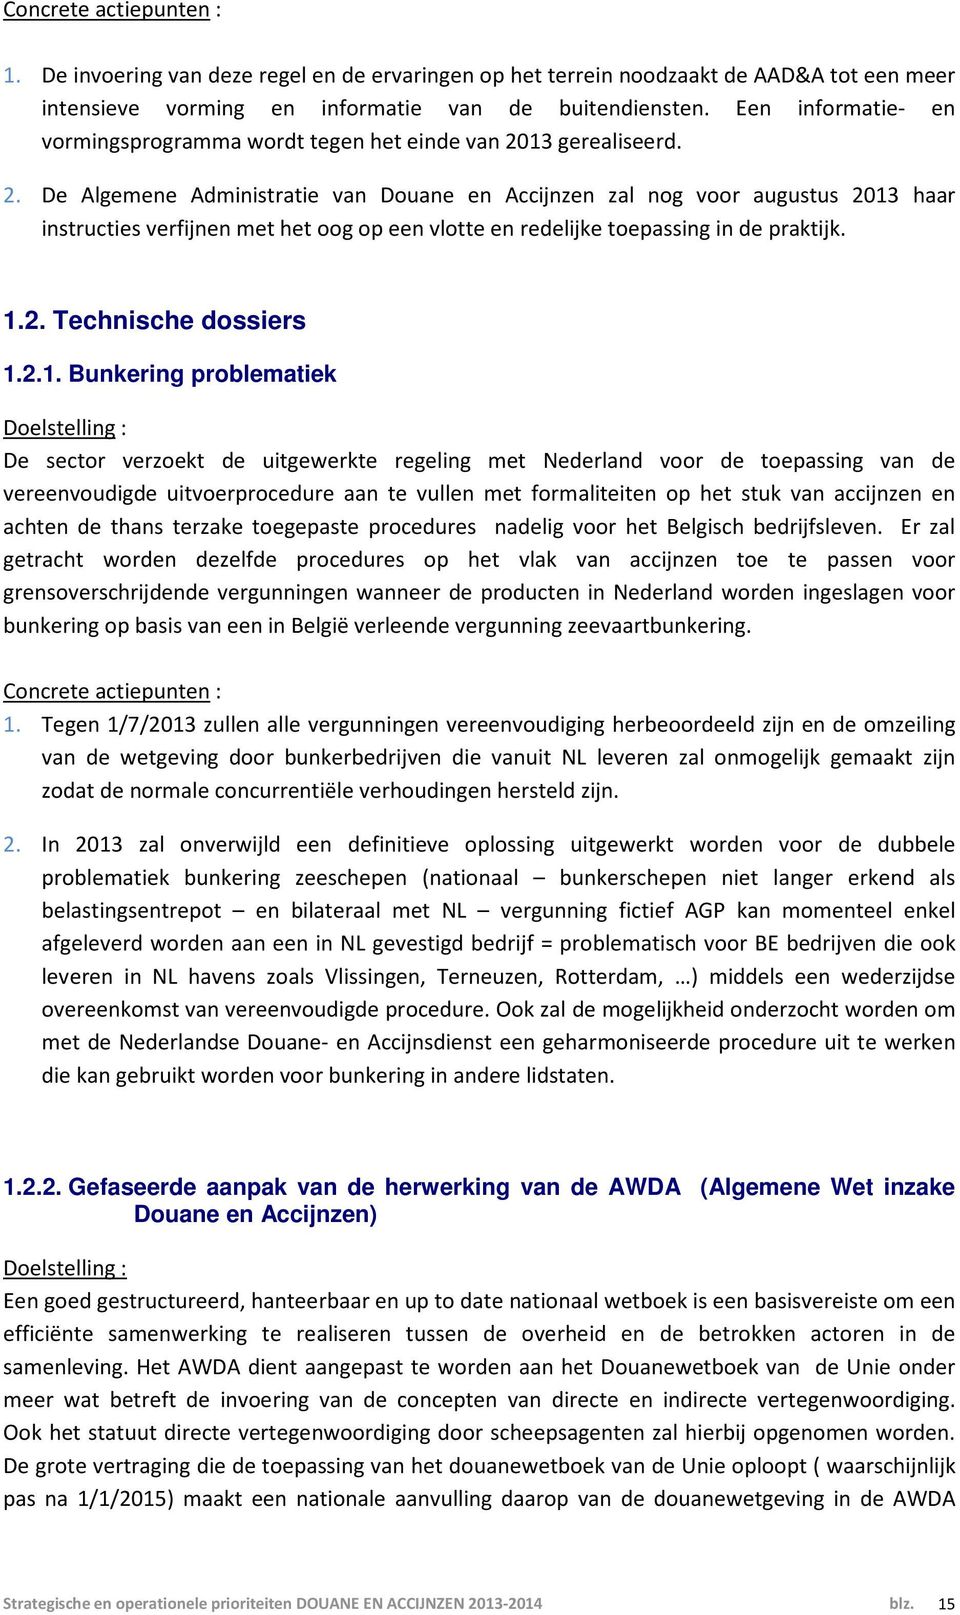 13 gerealiseerd. 2. De Algemene Administratie van Douane en Accijnzen zal nog voor augustus 2013 haar instructies verfijnen met het oog op een vlotte en redelijke toepassing in de praktijk. 1.2. Technische dossiers 1.